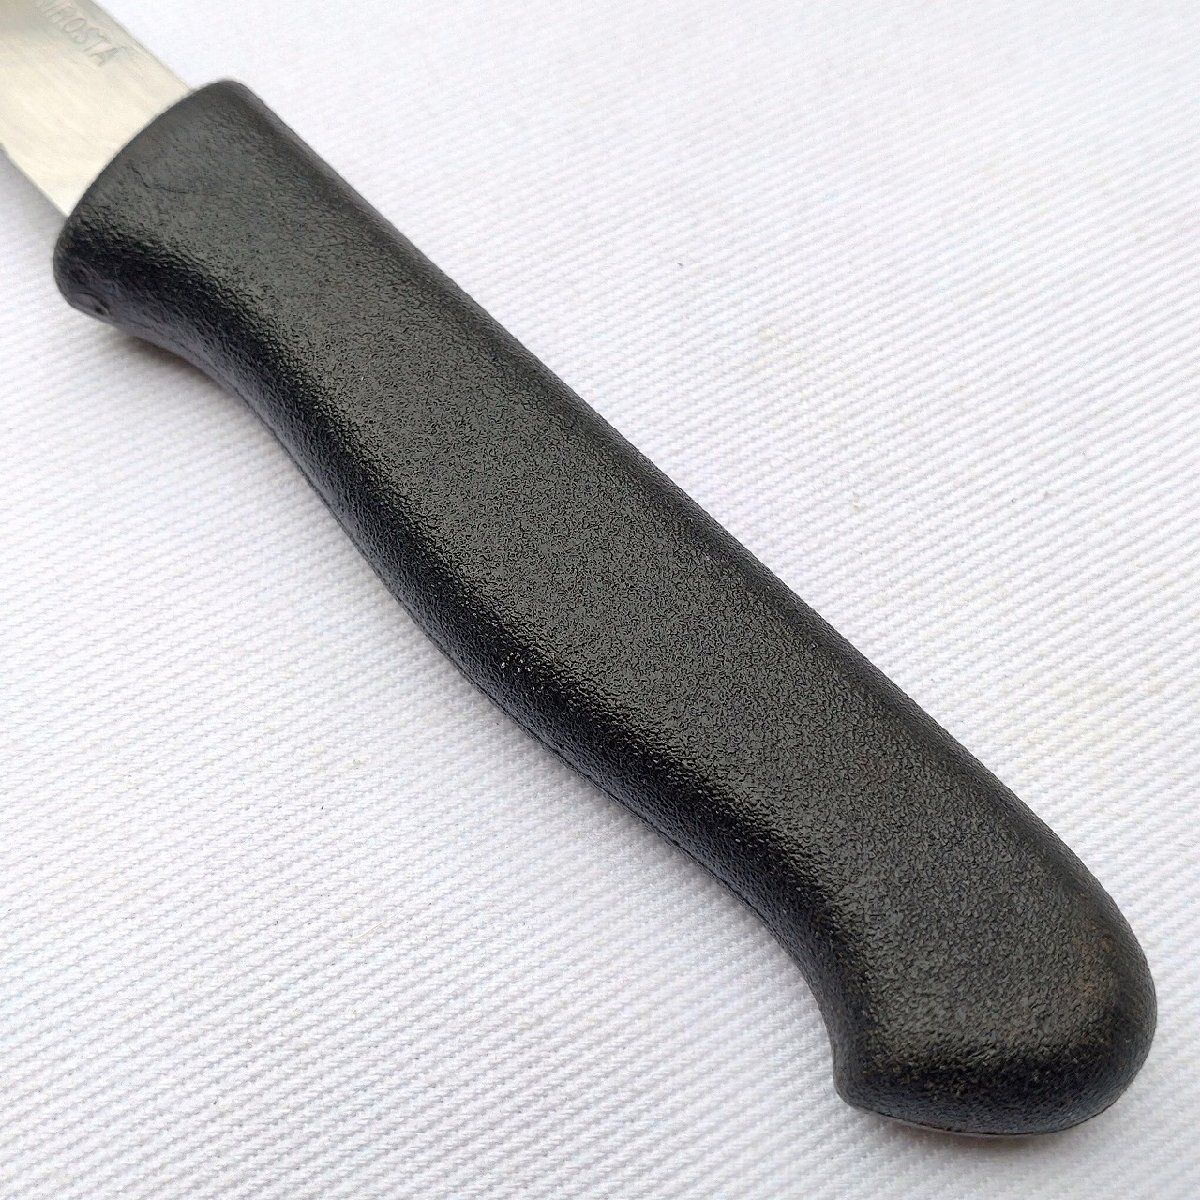  мелкий нож столовый нож сыр нож NIROSTA лезвие длина примерно 110. европейского типа кухонный нож маленький размер кухонный нож . шт ножи режущий инструмент [9667]